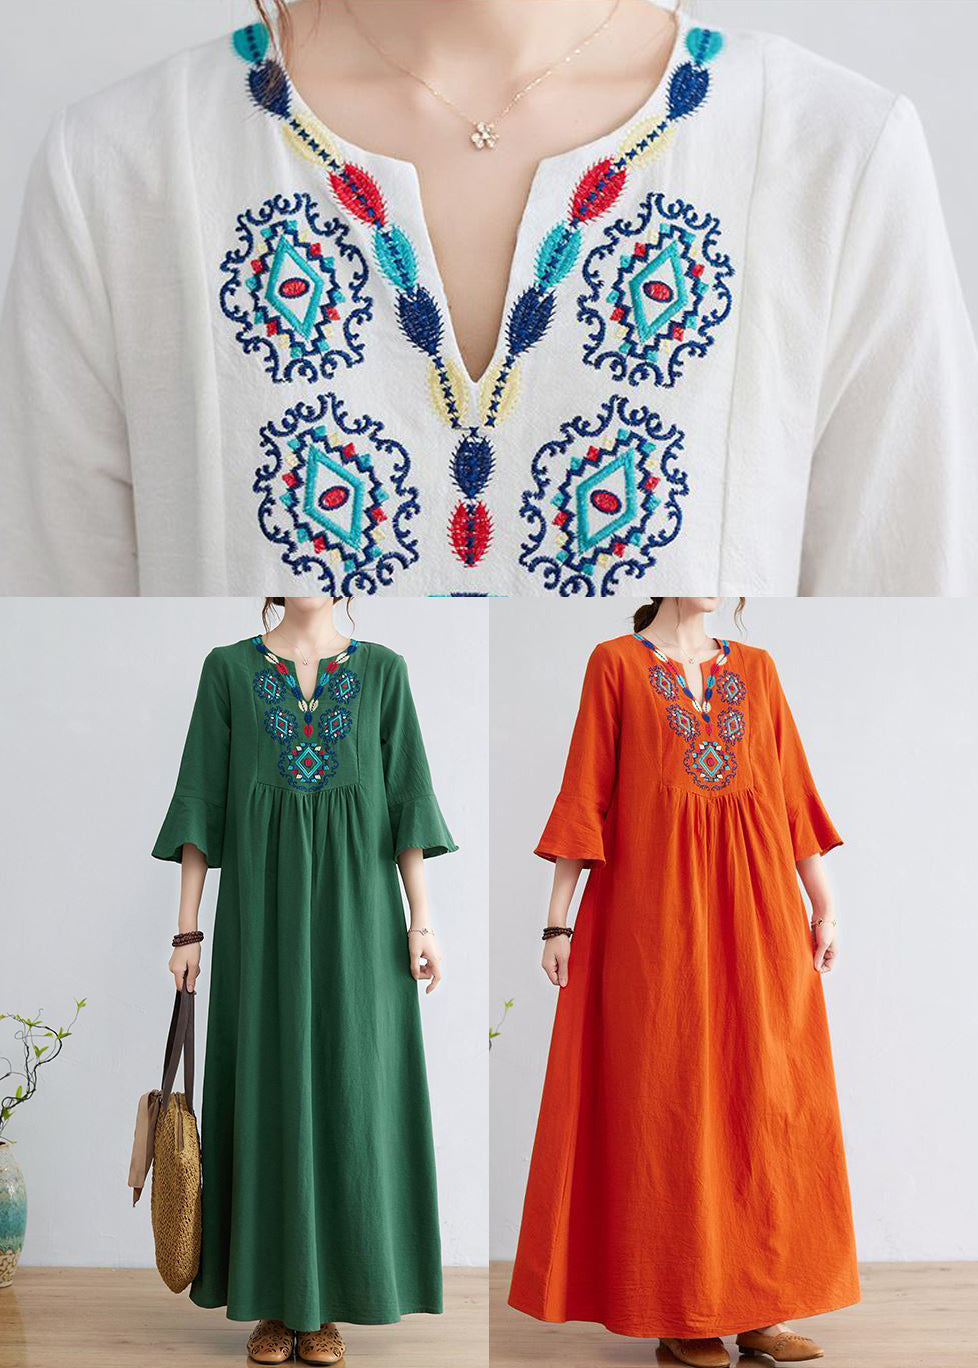 Women Orange Embroideried Wrinkled Cotton Maxi Dress Bracelet Sleeve LY0913 - fabuloryshop